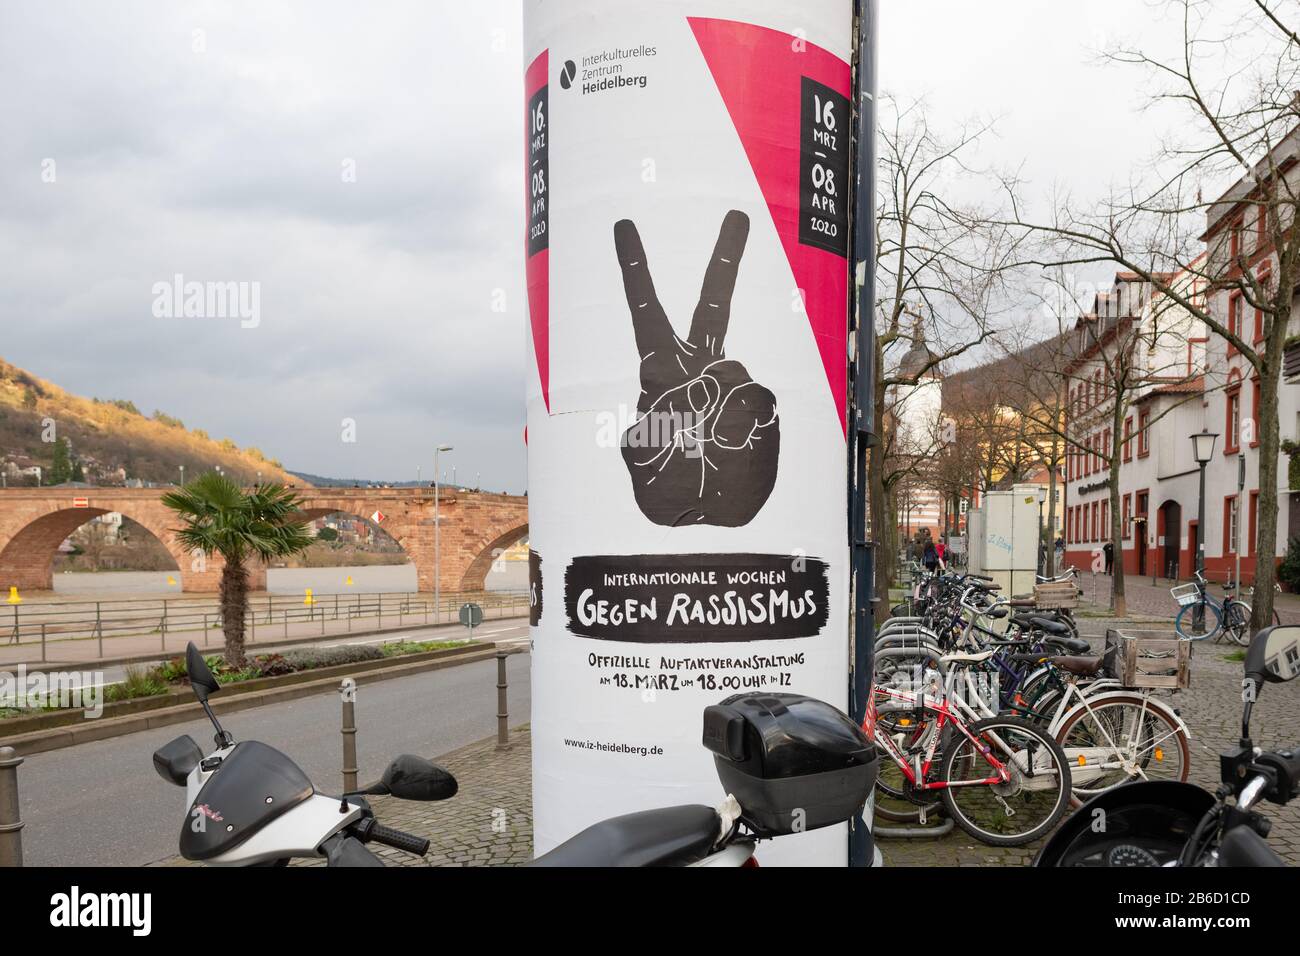 Werbeplakat "Internationale Wochen Gegen Rassismus 2020", Heidelberg, Deutschland Stockfoto